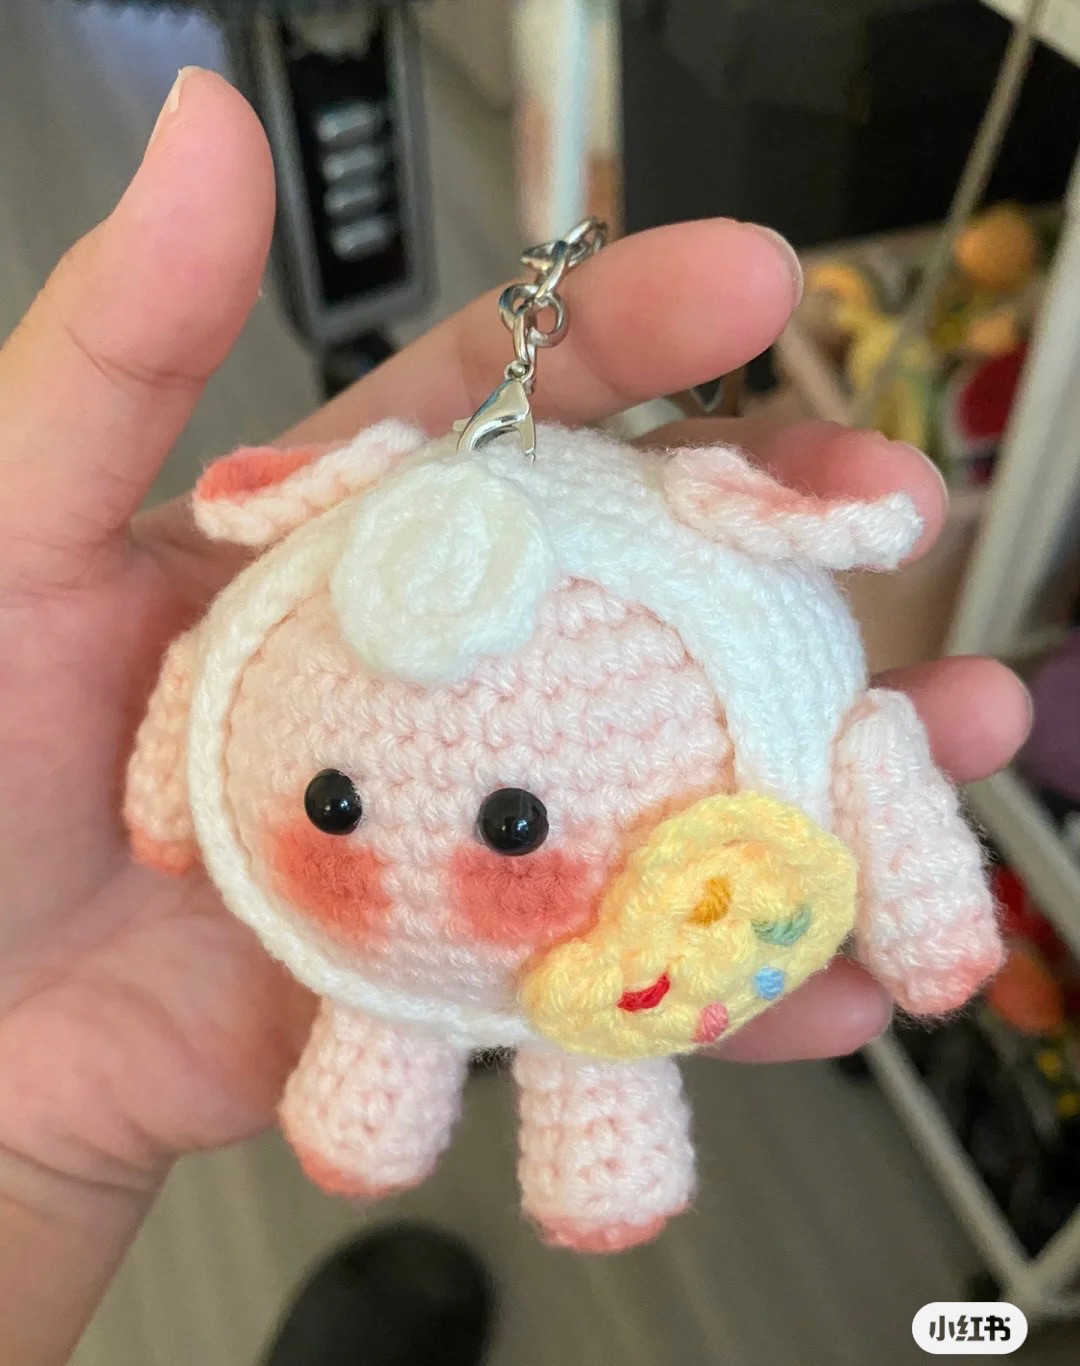 Baby dumpling keychain crochet pattern